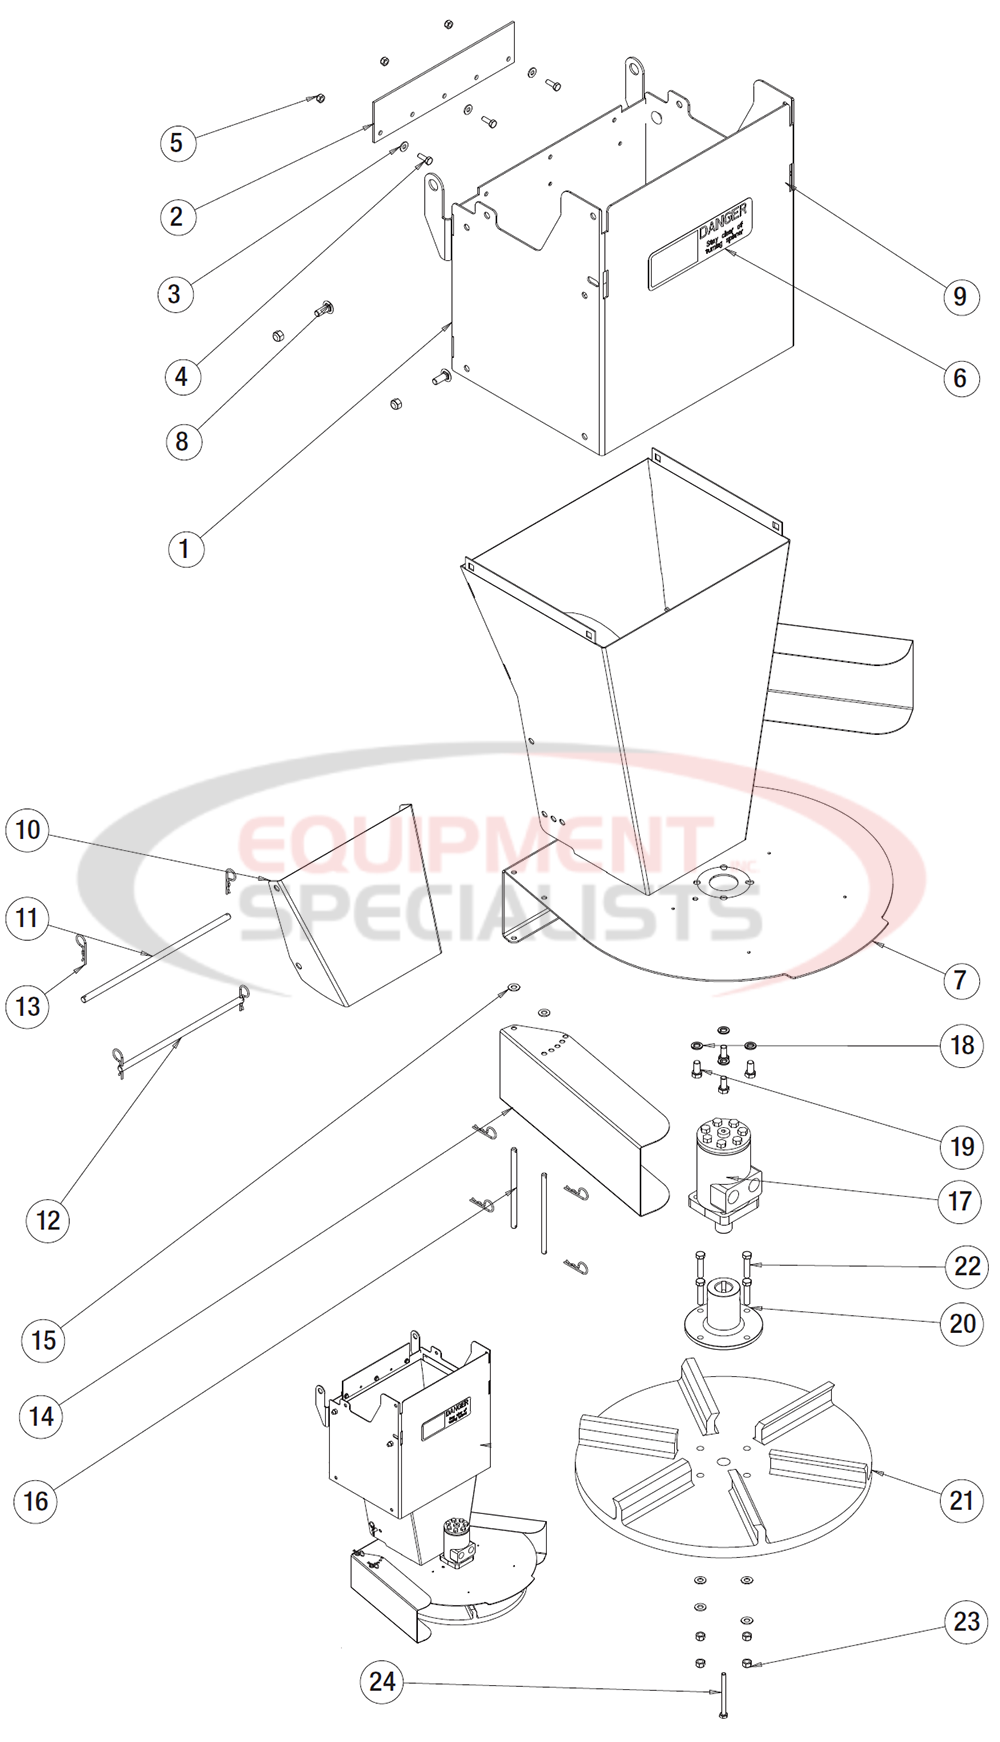 Buyers Salt Dogg Hydraulic 2.5 yd - 5.0 yd Chute Assembly Breakdown Diagram